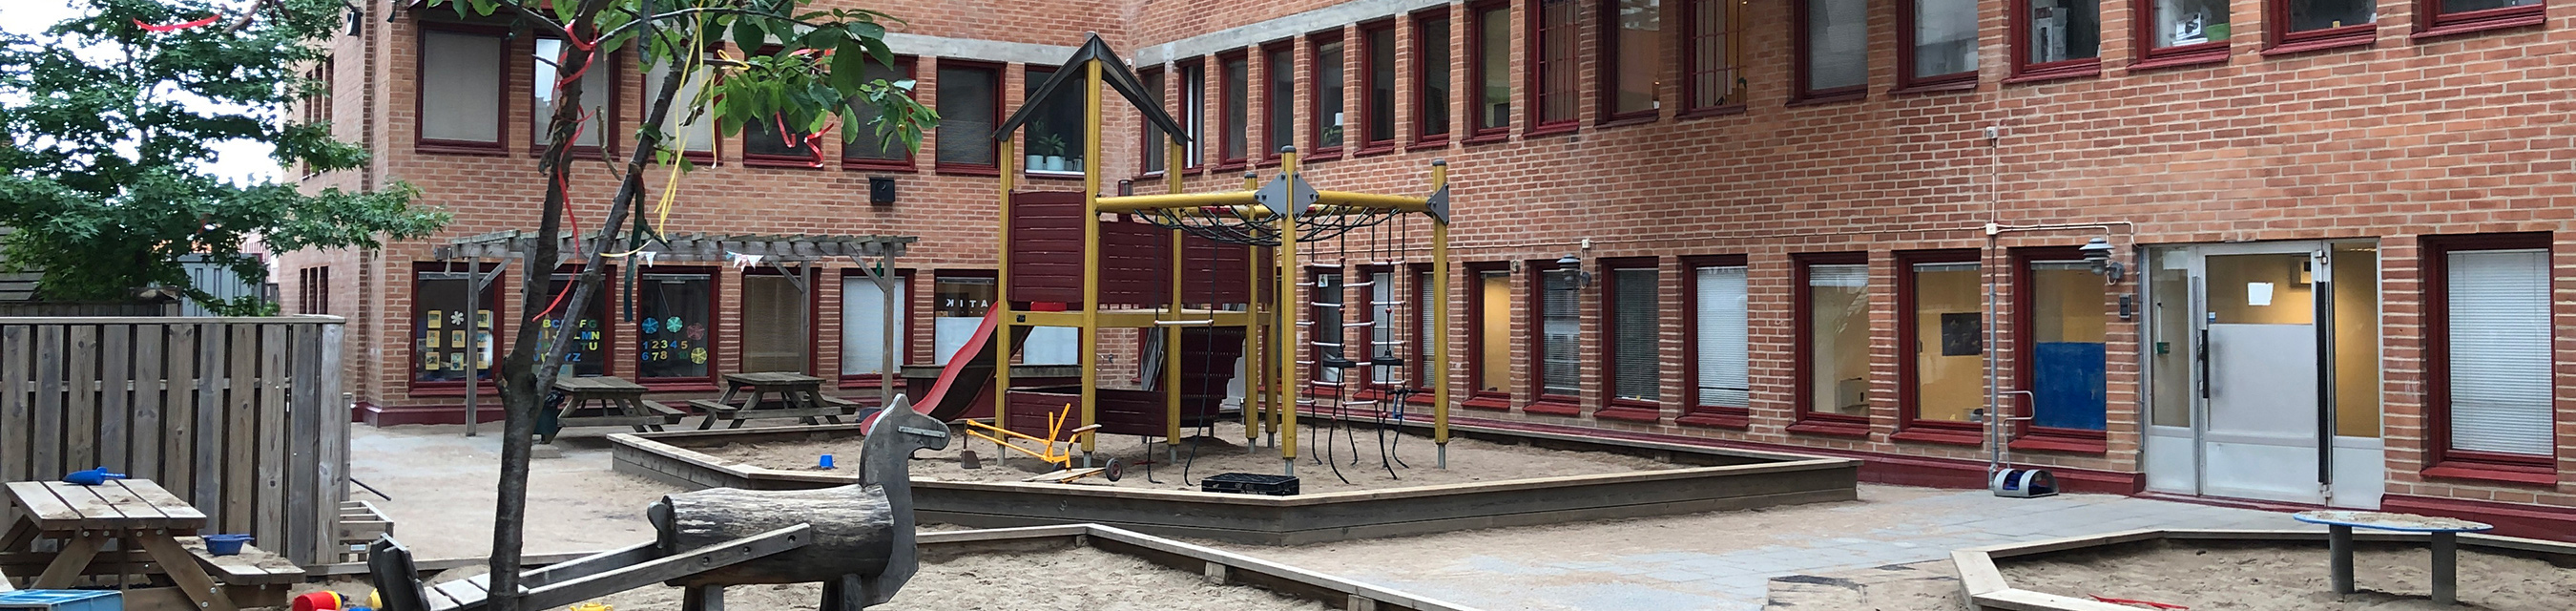 Möllevångens förskola ligger i ett flerfamiljshus och har fem avdelningar.